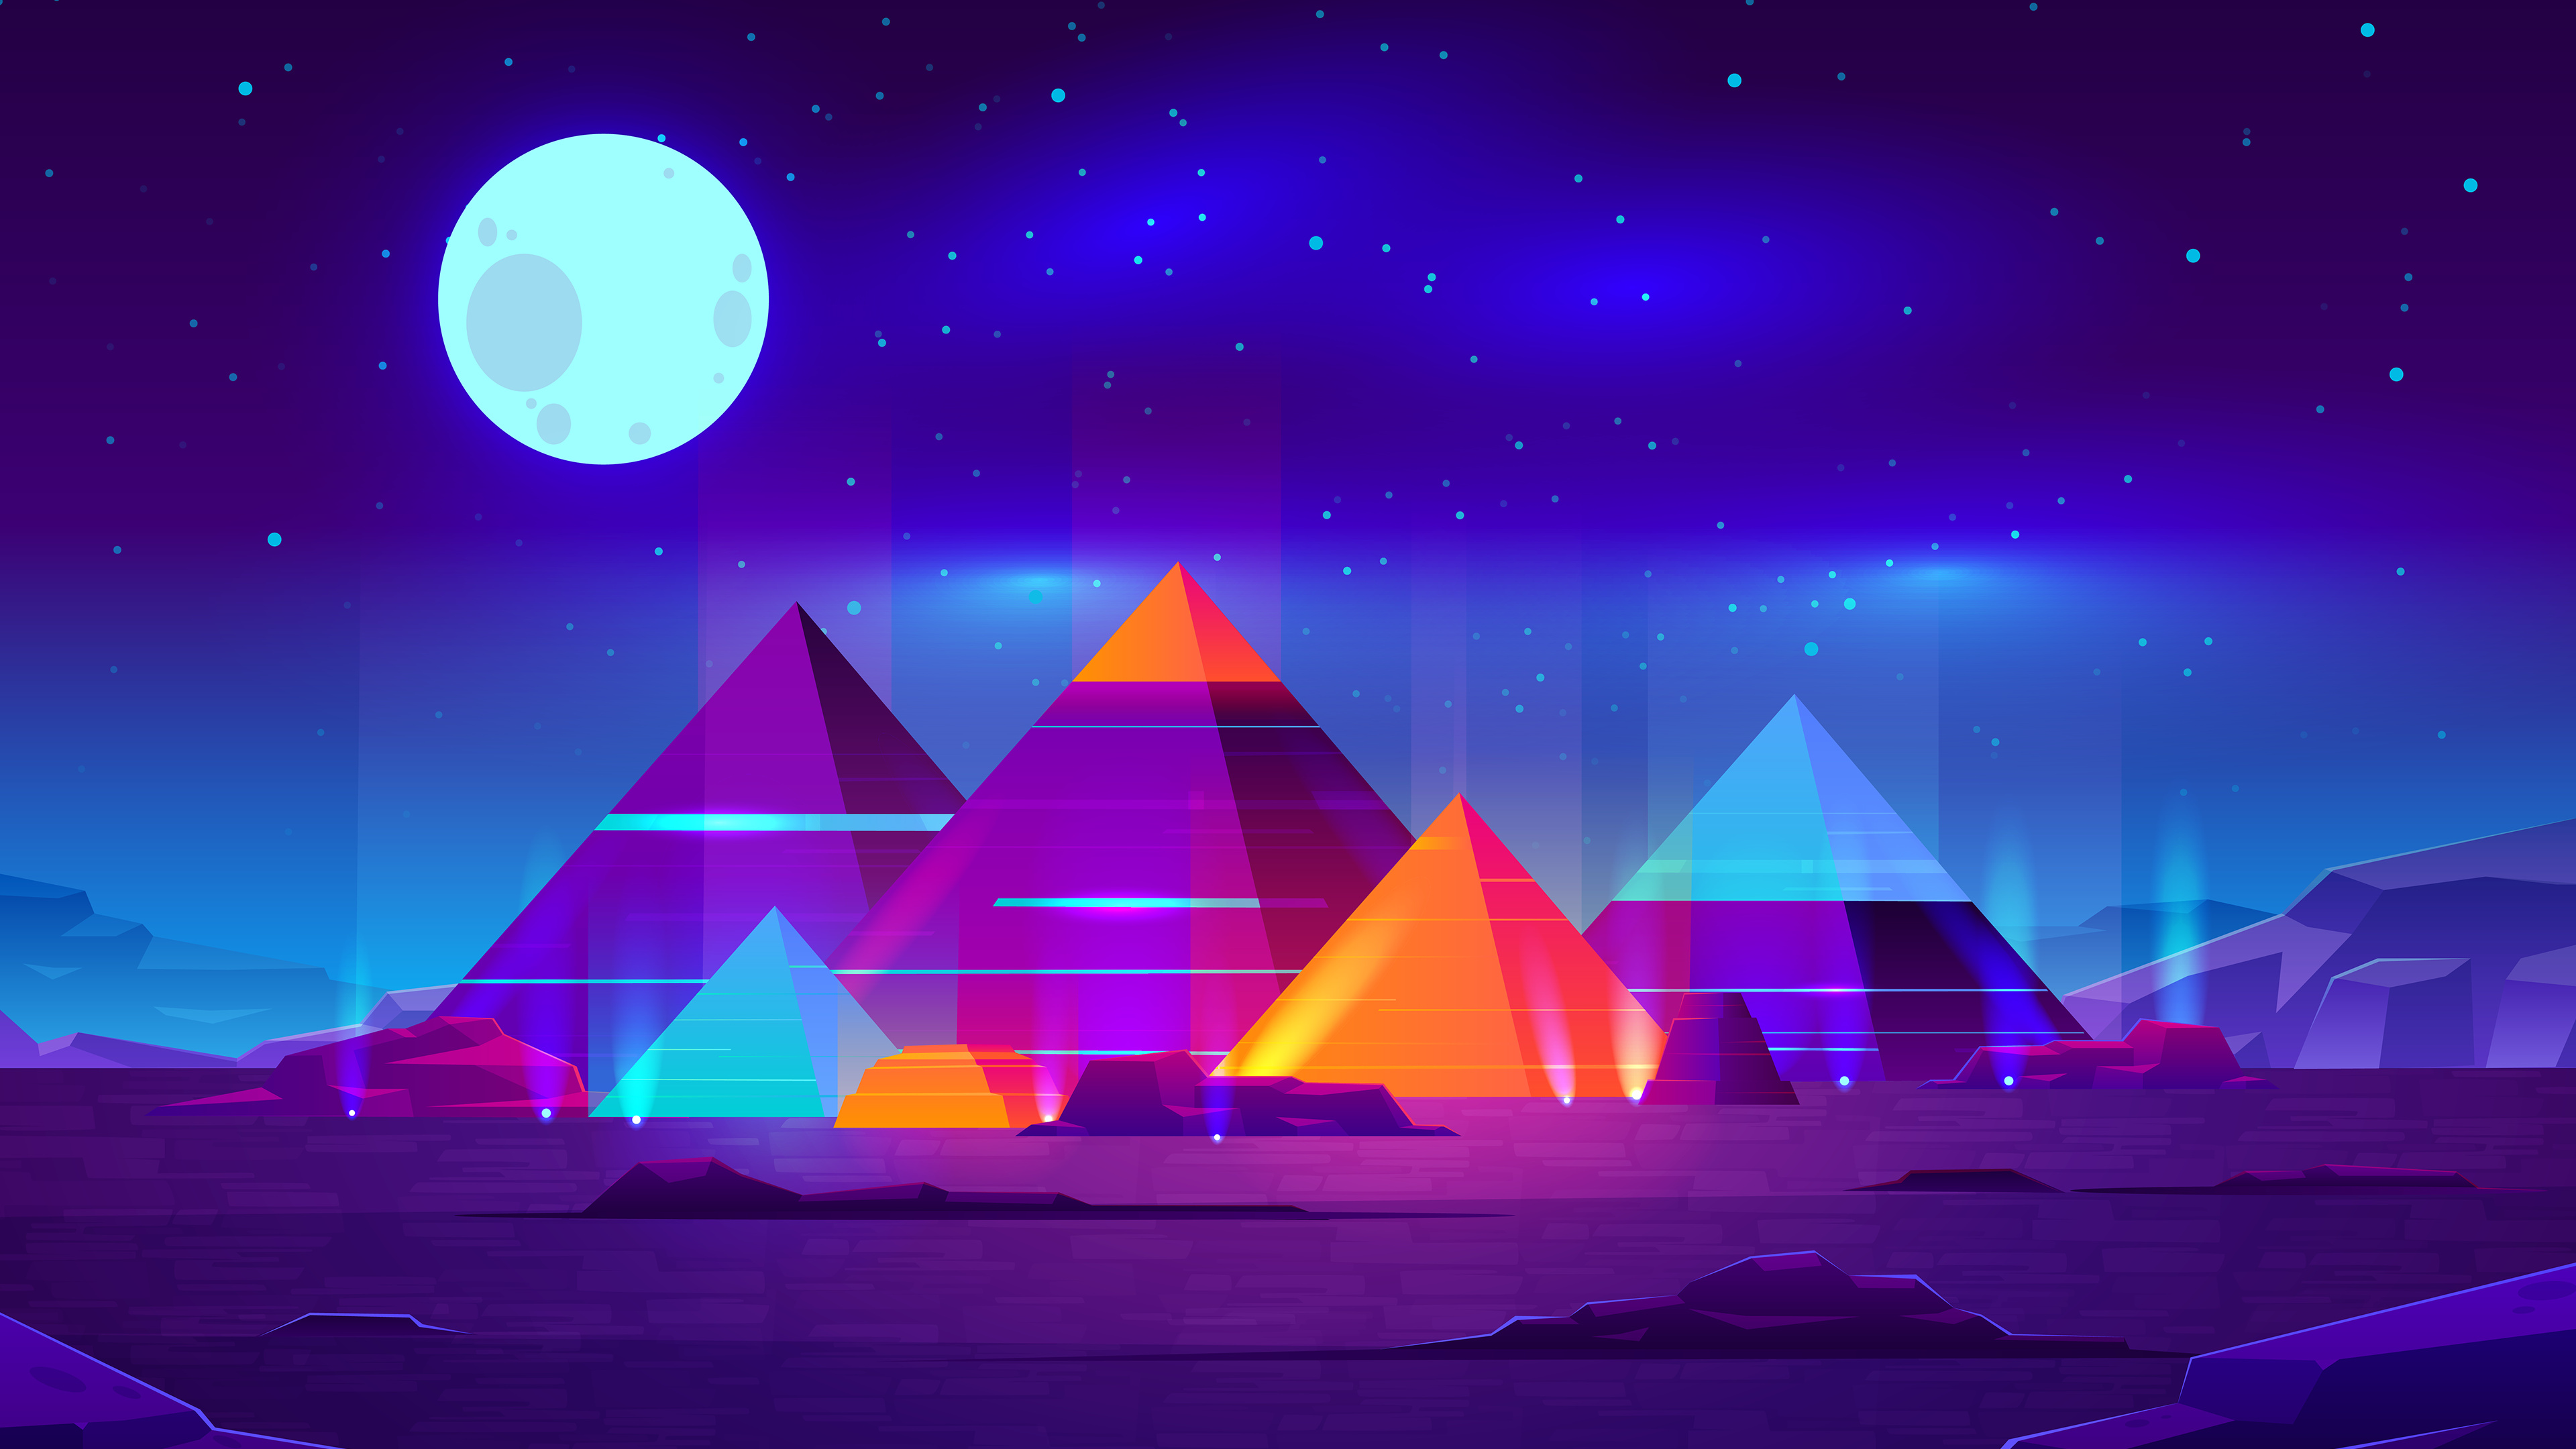 General 3840x2160 Moon neon digital art stars planet night starry night CGI cyan blue pyramid